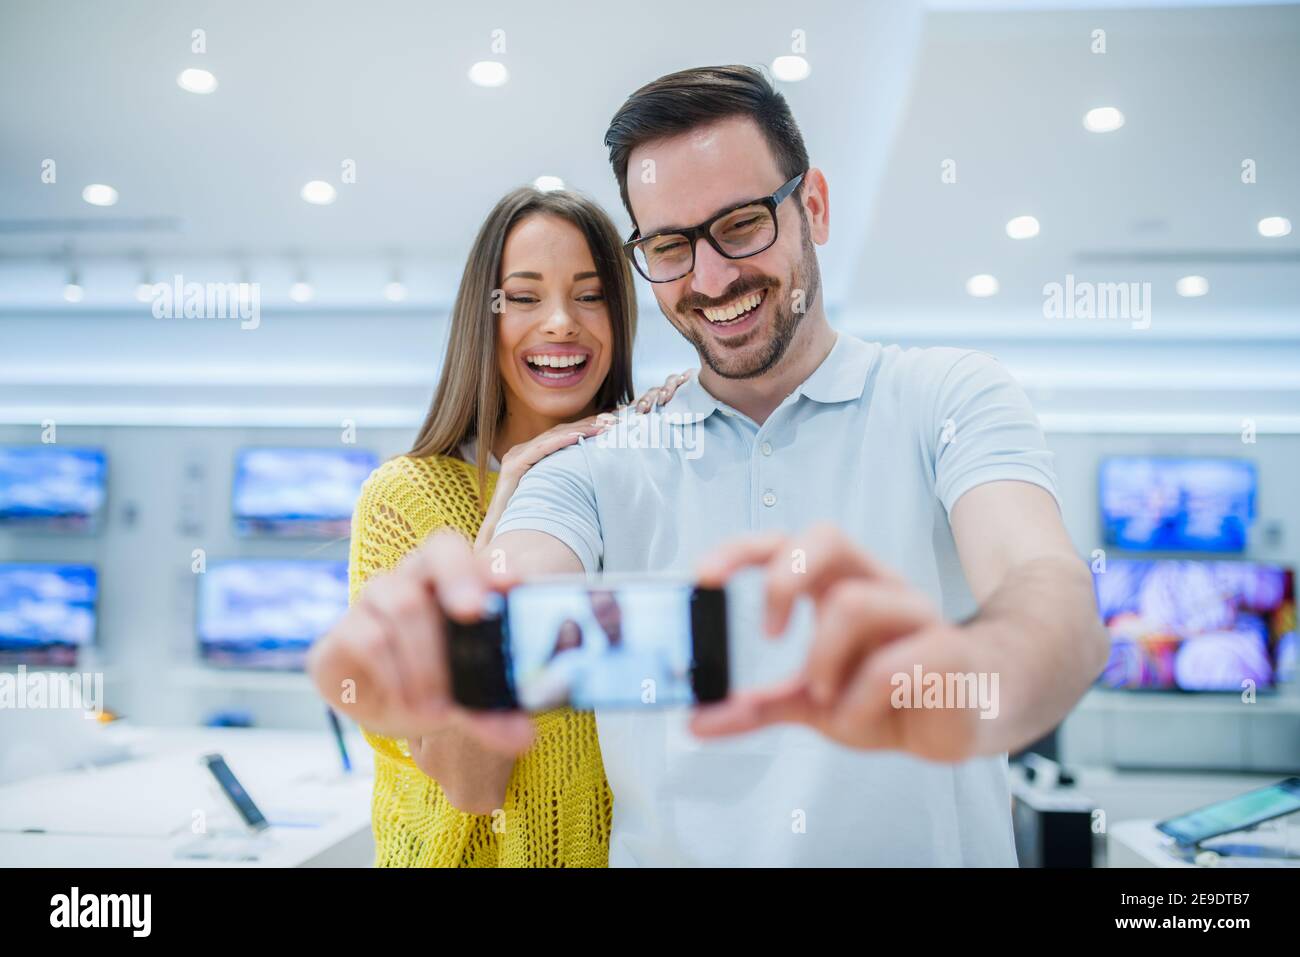 Coppia che fa selfie nel negozio di tecnologia. Negli schermi TV bacground. Foto Stock